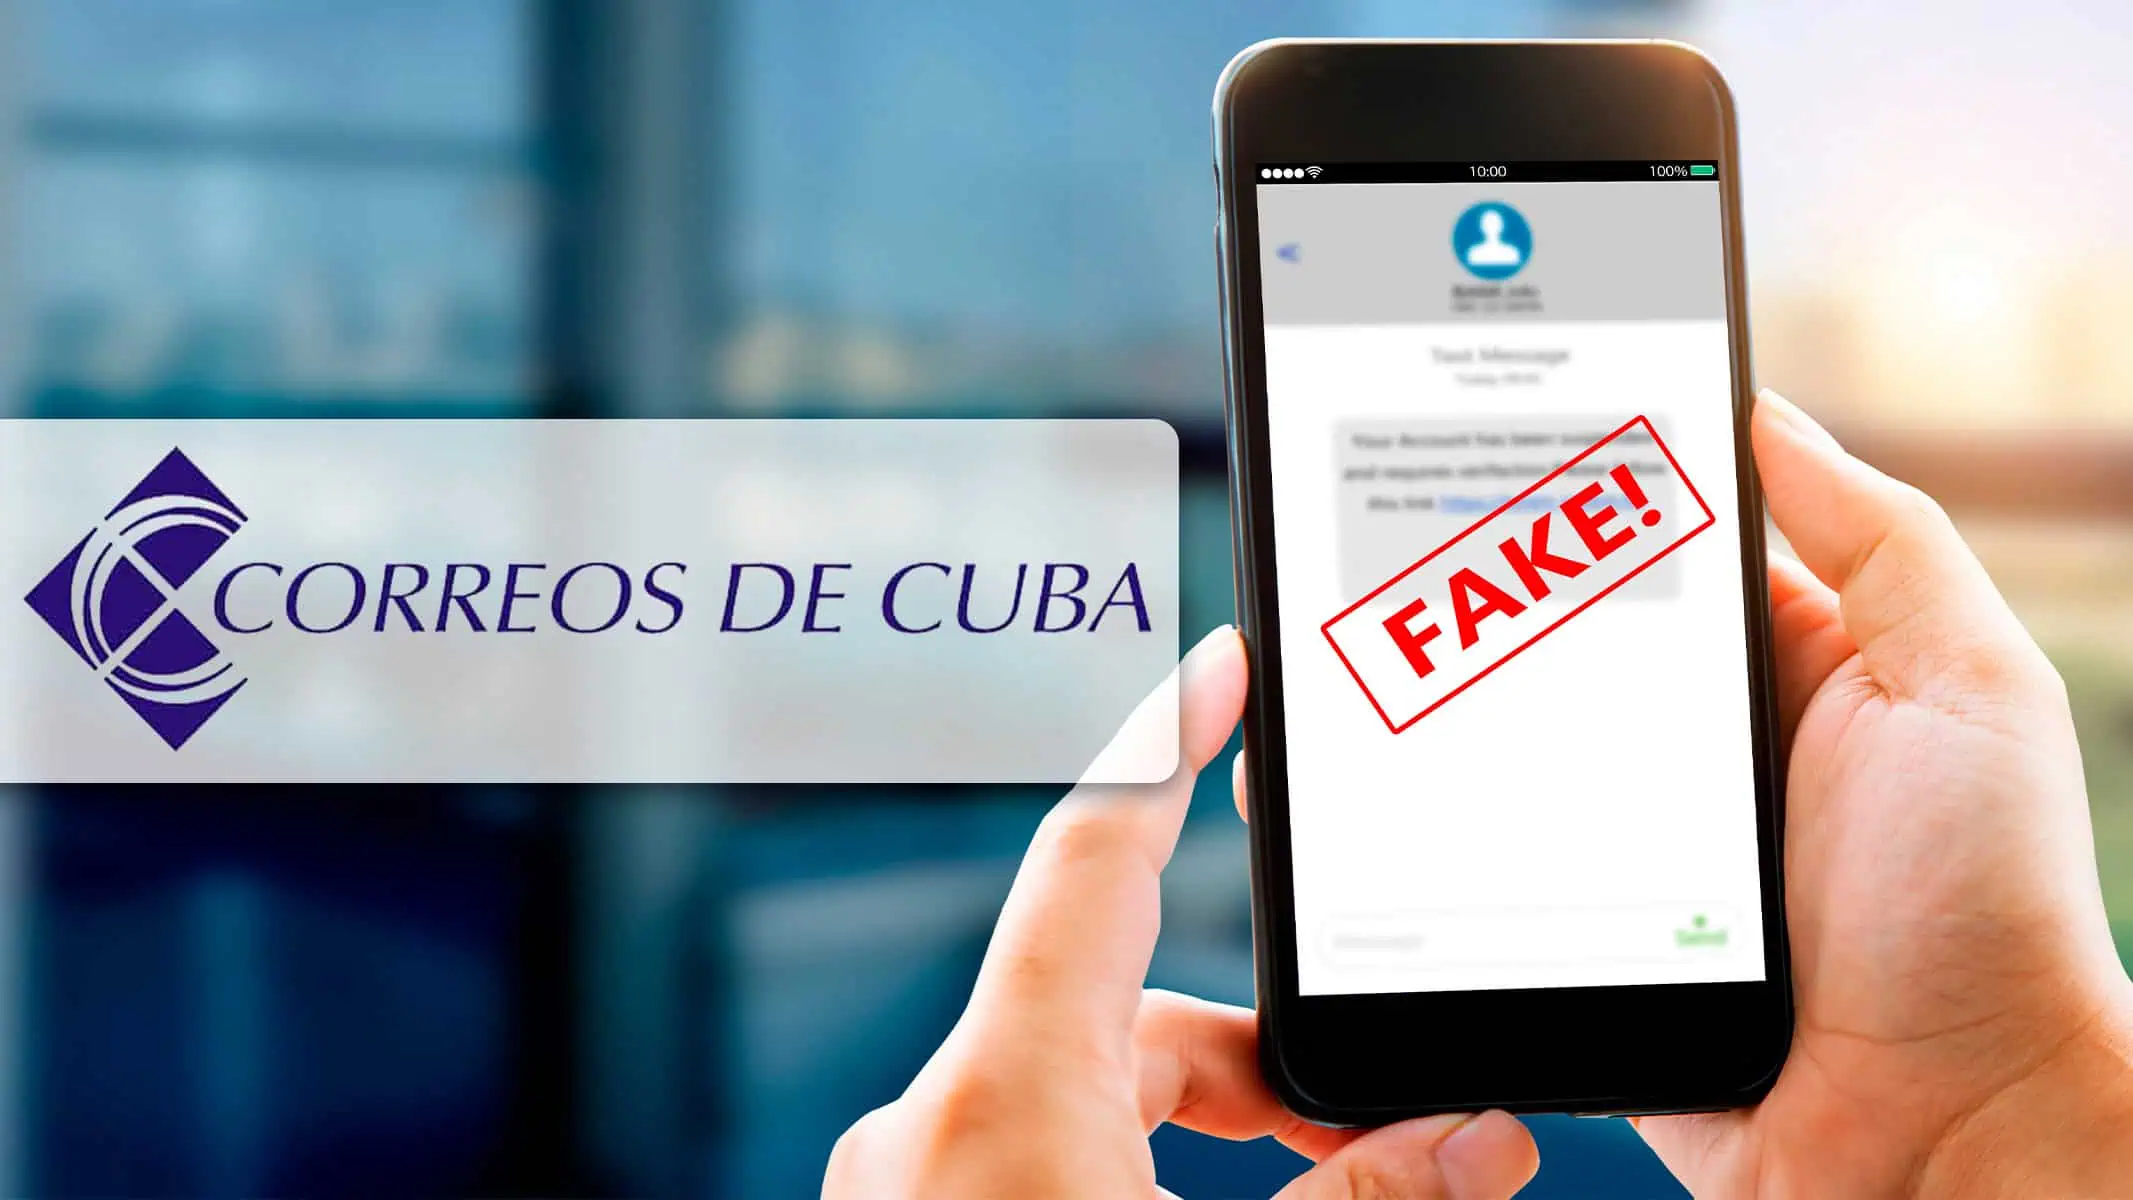 Correos de Cuba Alerta a los Usuarios: Una Cuenta Falsa Intenta Suplantar su Identidad